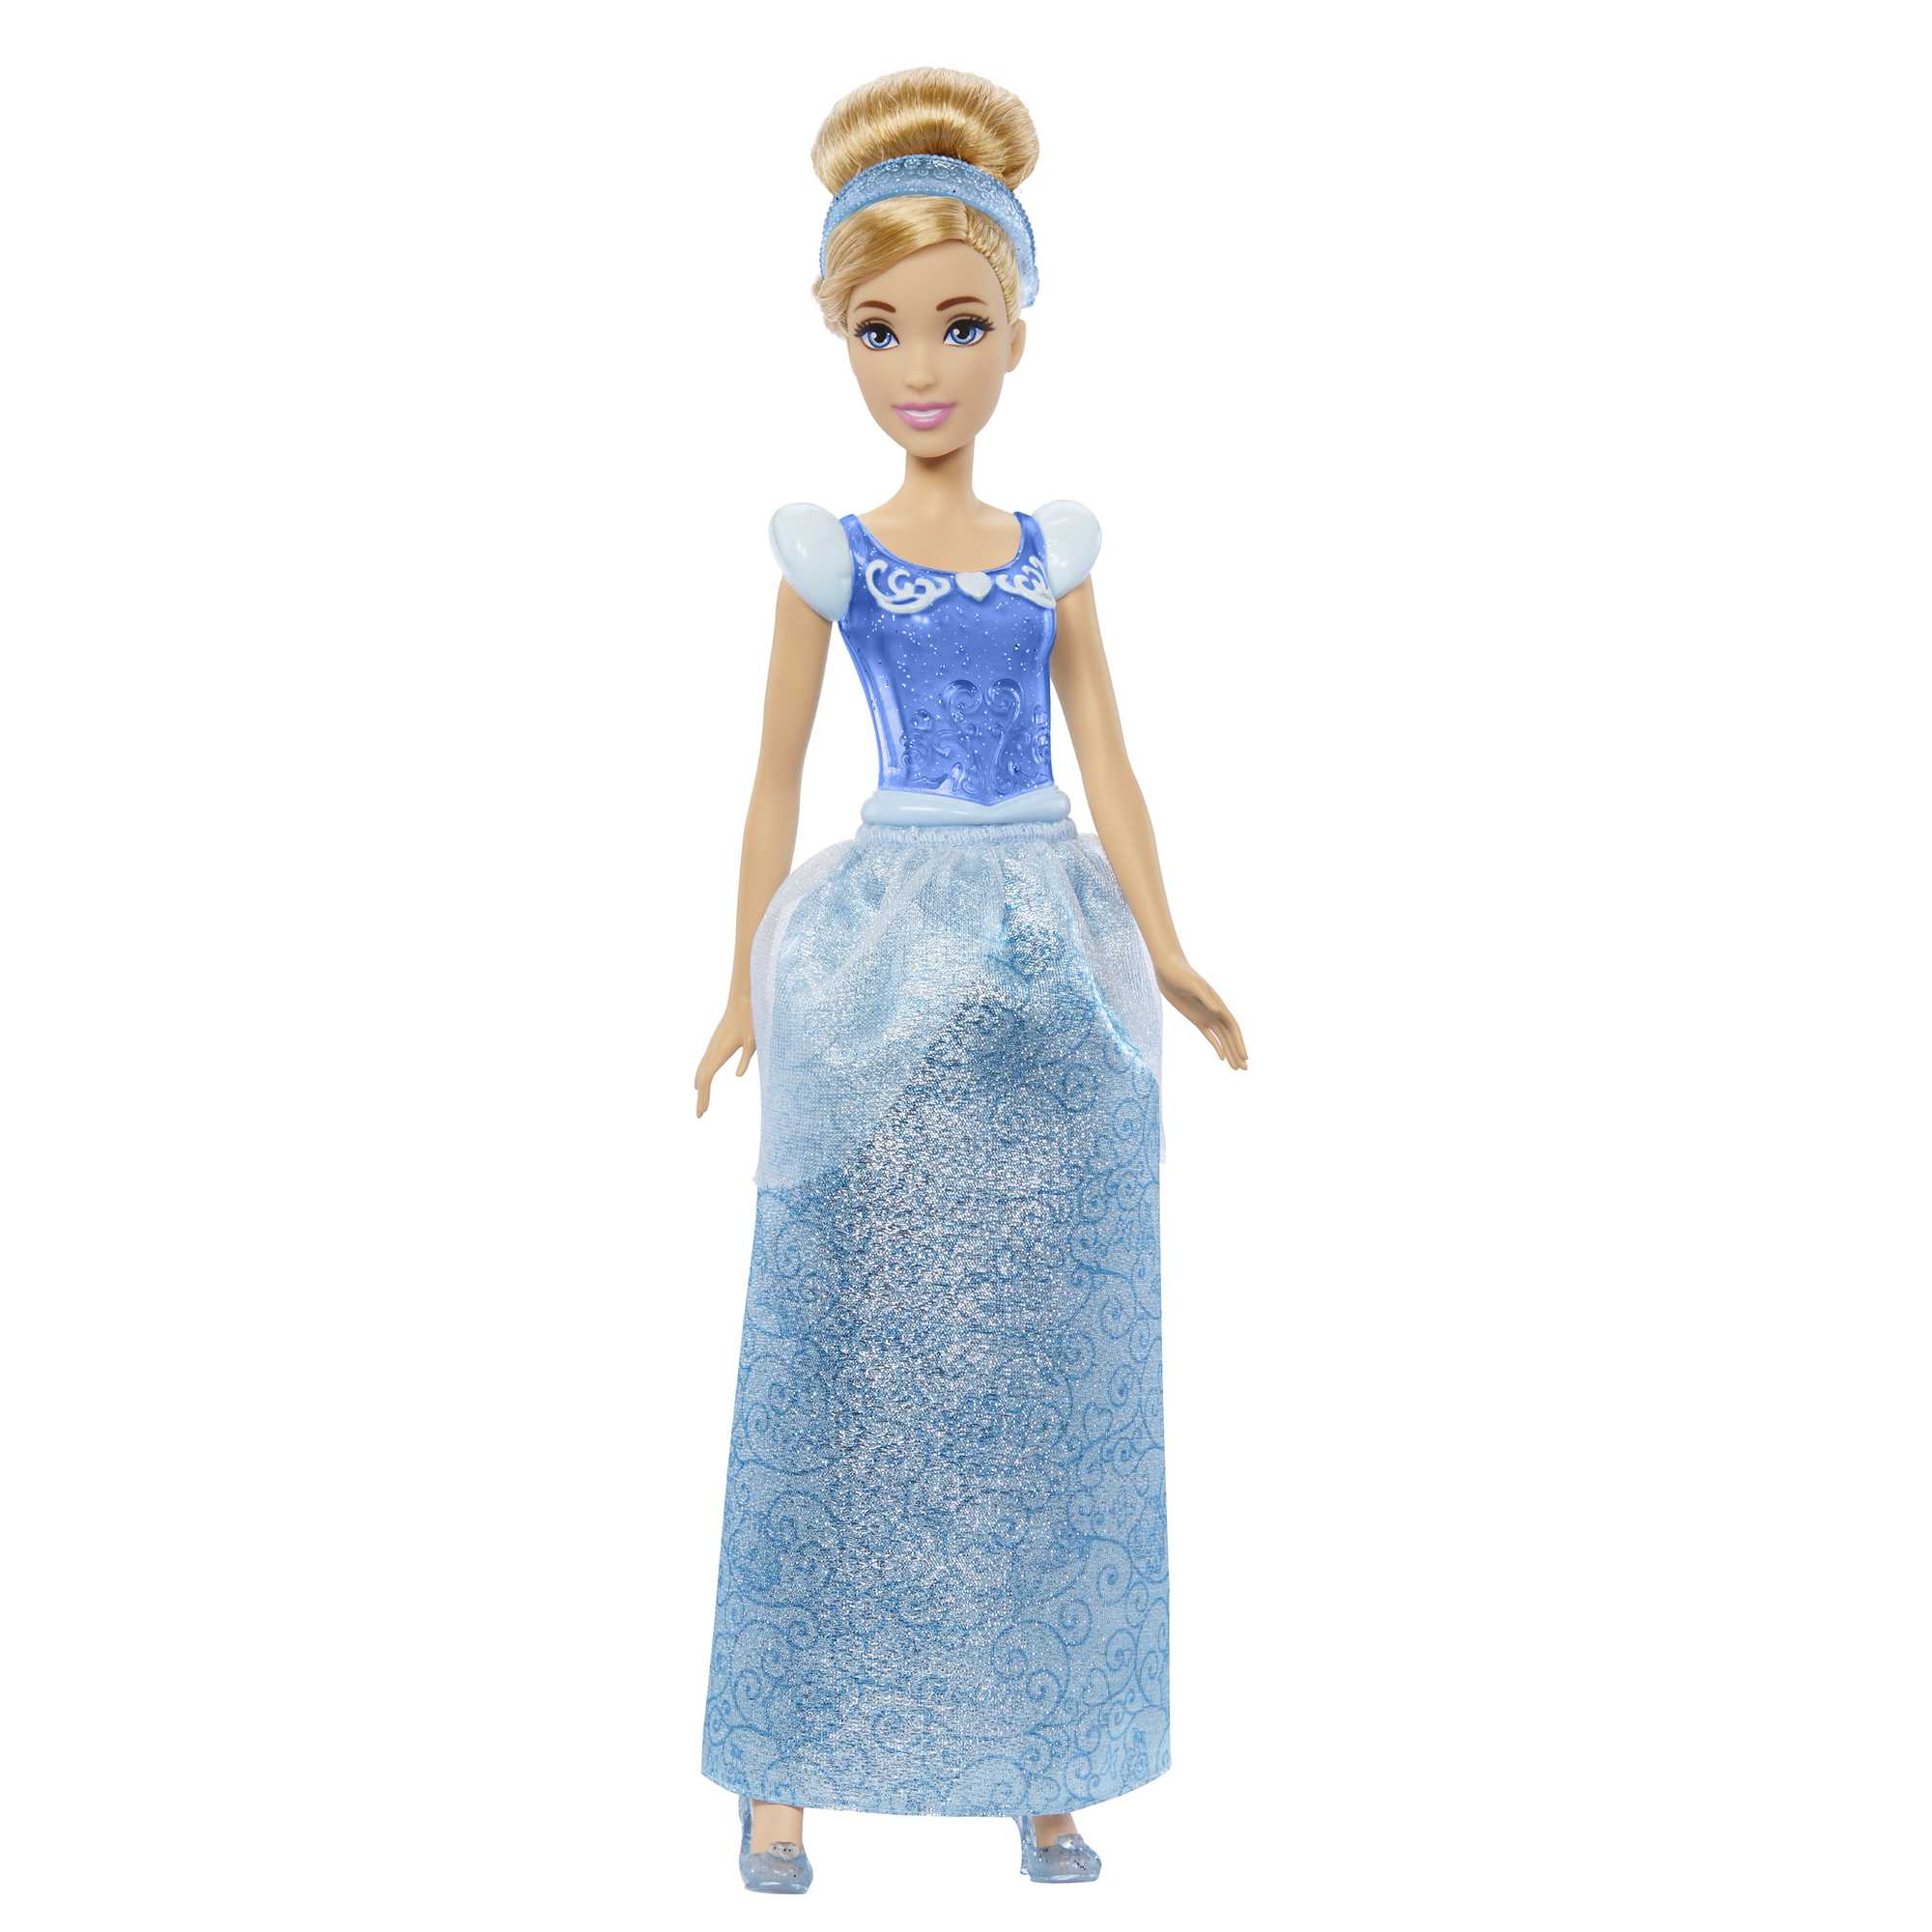 Acheter Disney Mattel – poupée princesse Disney Cendrillon, couleurs  mélangées, jouets populaires pour enfants coréens